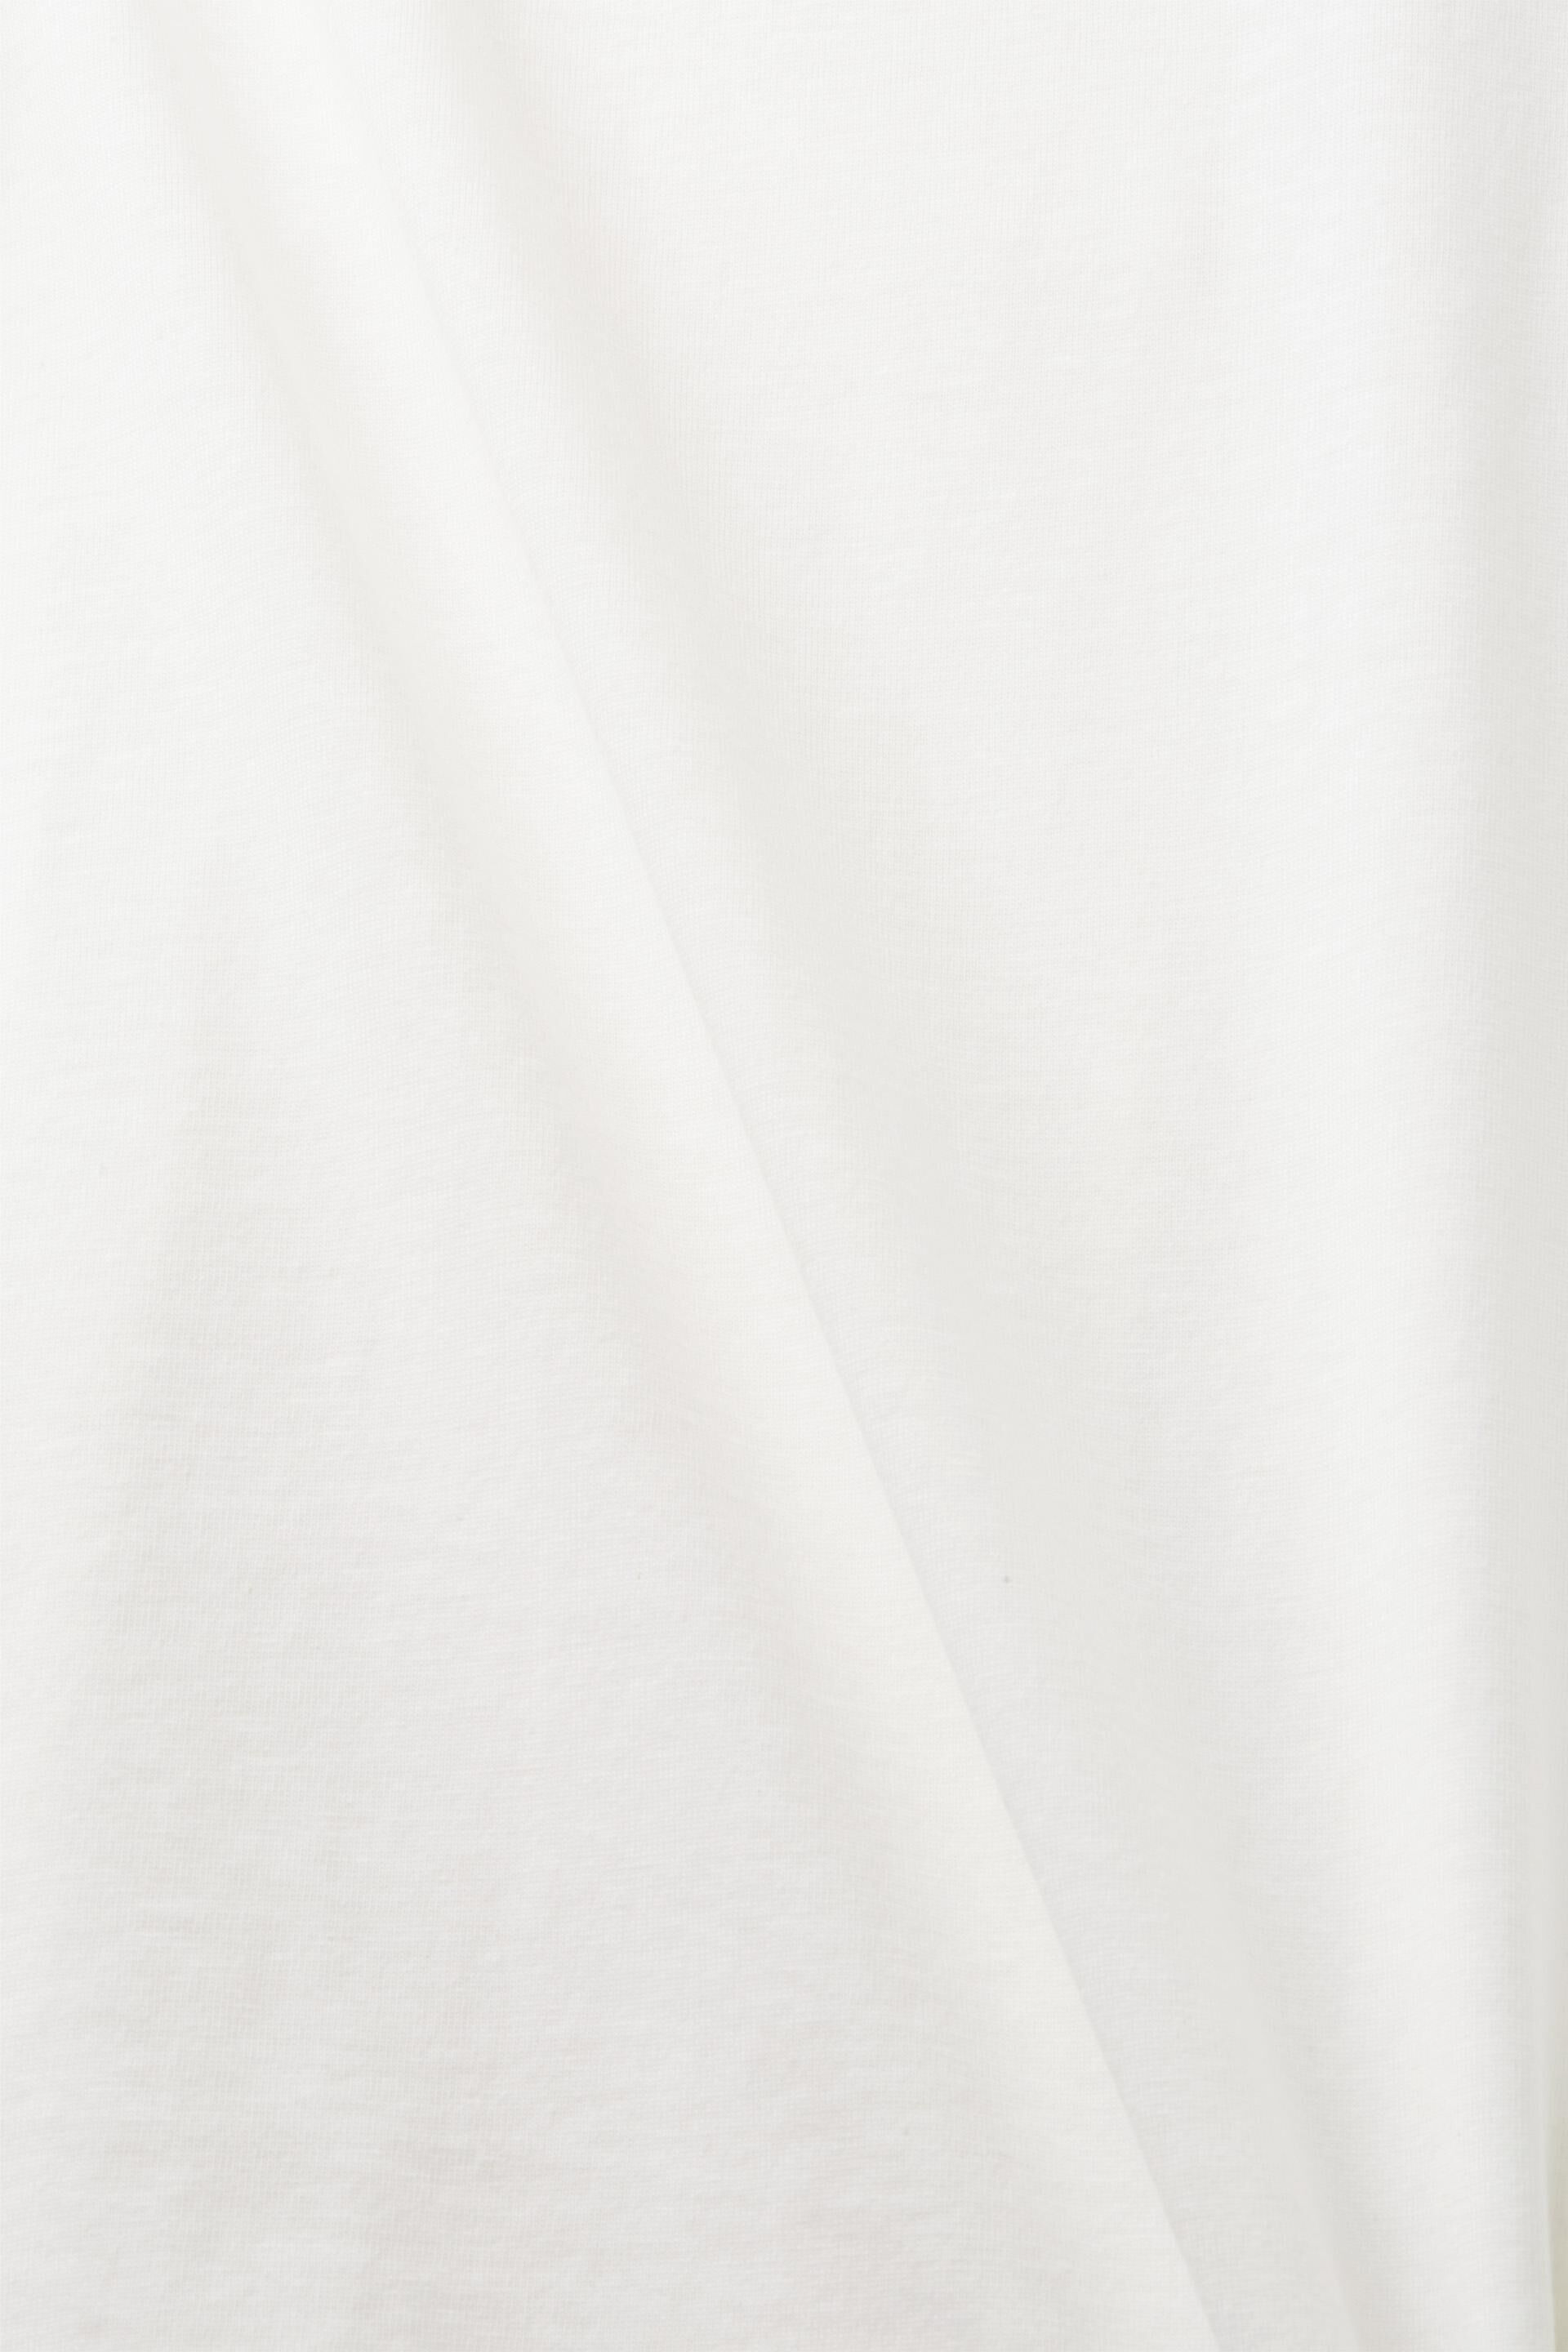 Esprit % Baumwolle mit Rundhalsausschnitt, T-Shirt 100